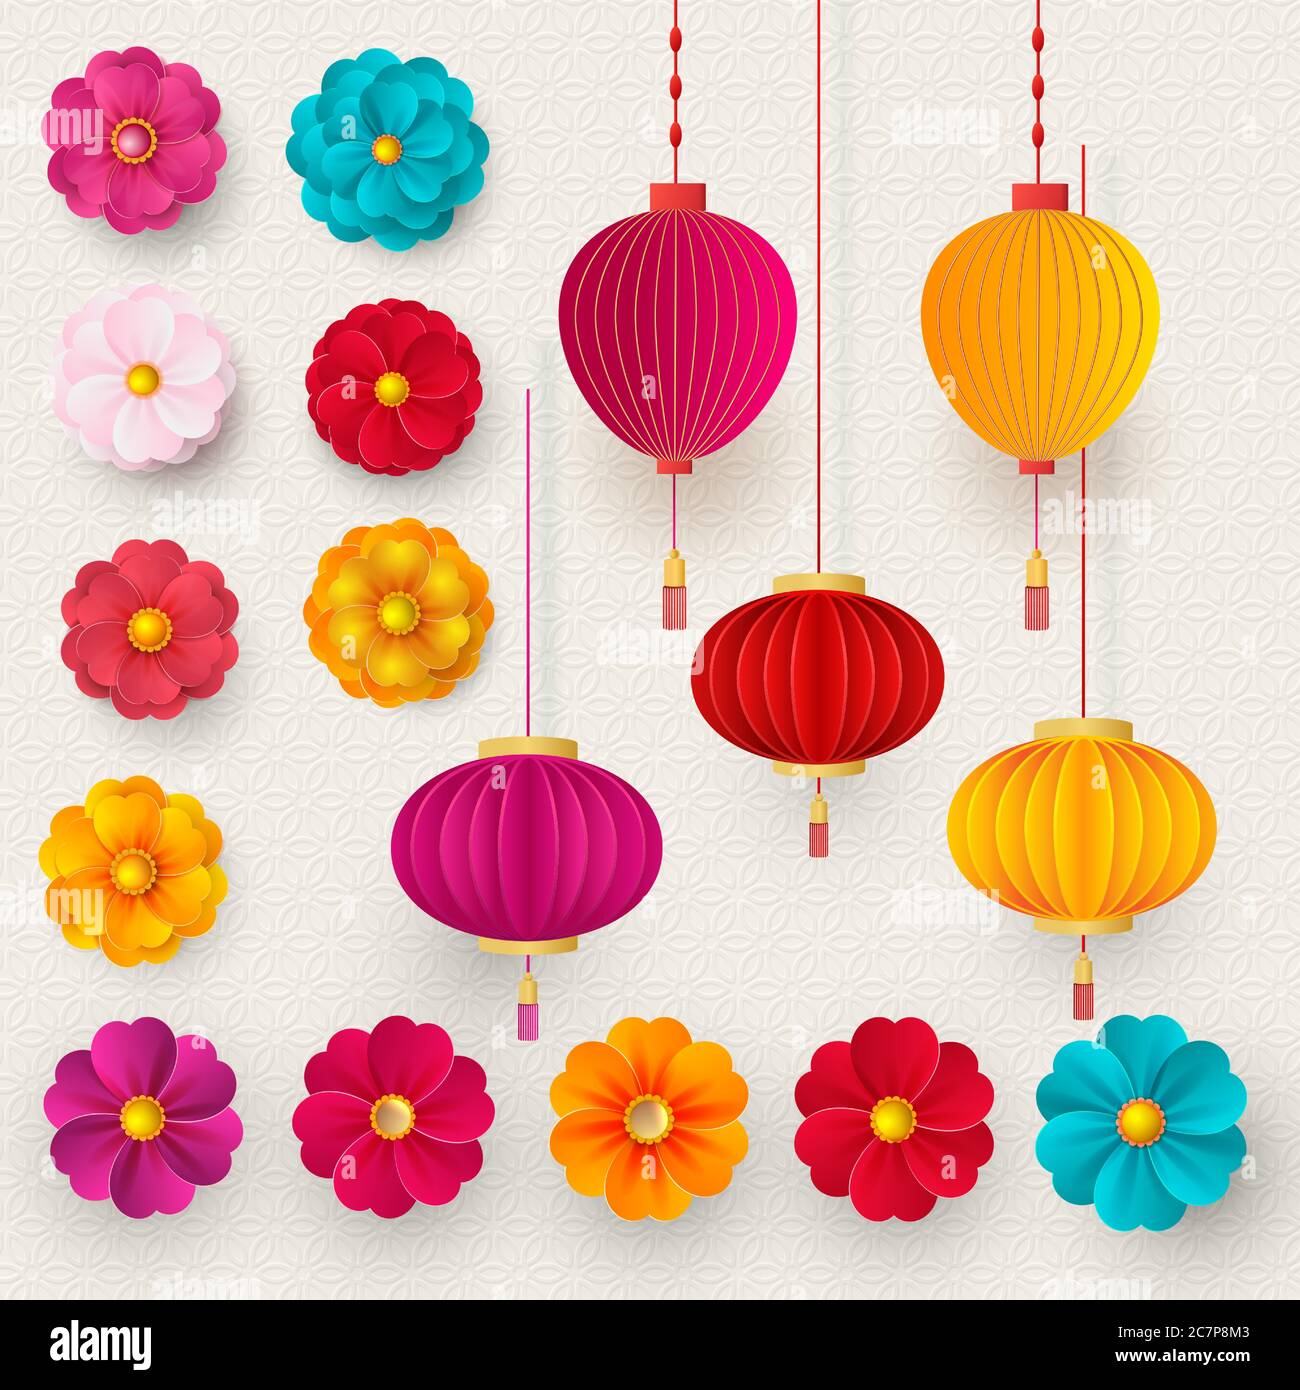 Badges, nuages et fleurs sakura en relief chinois vectoriel. Fleurs et lanternes lumineuses. Style de papier. Bonne année 2021 Vector Illustration de Vecteur